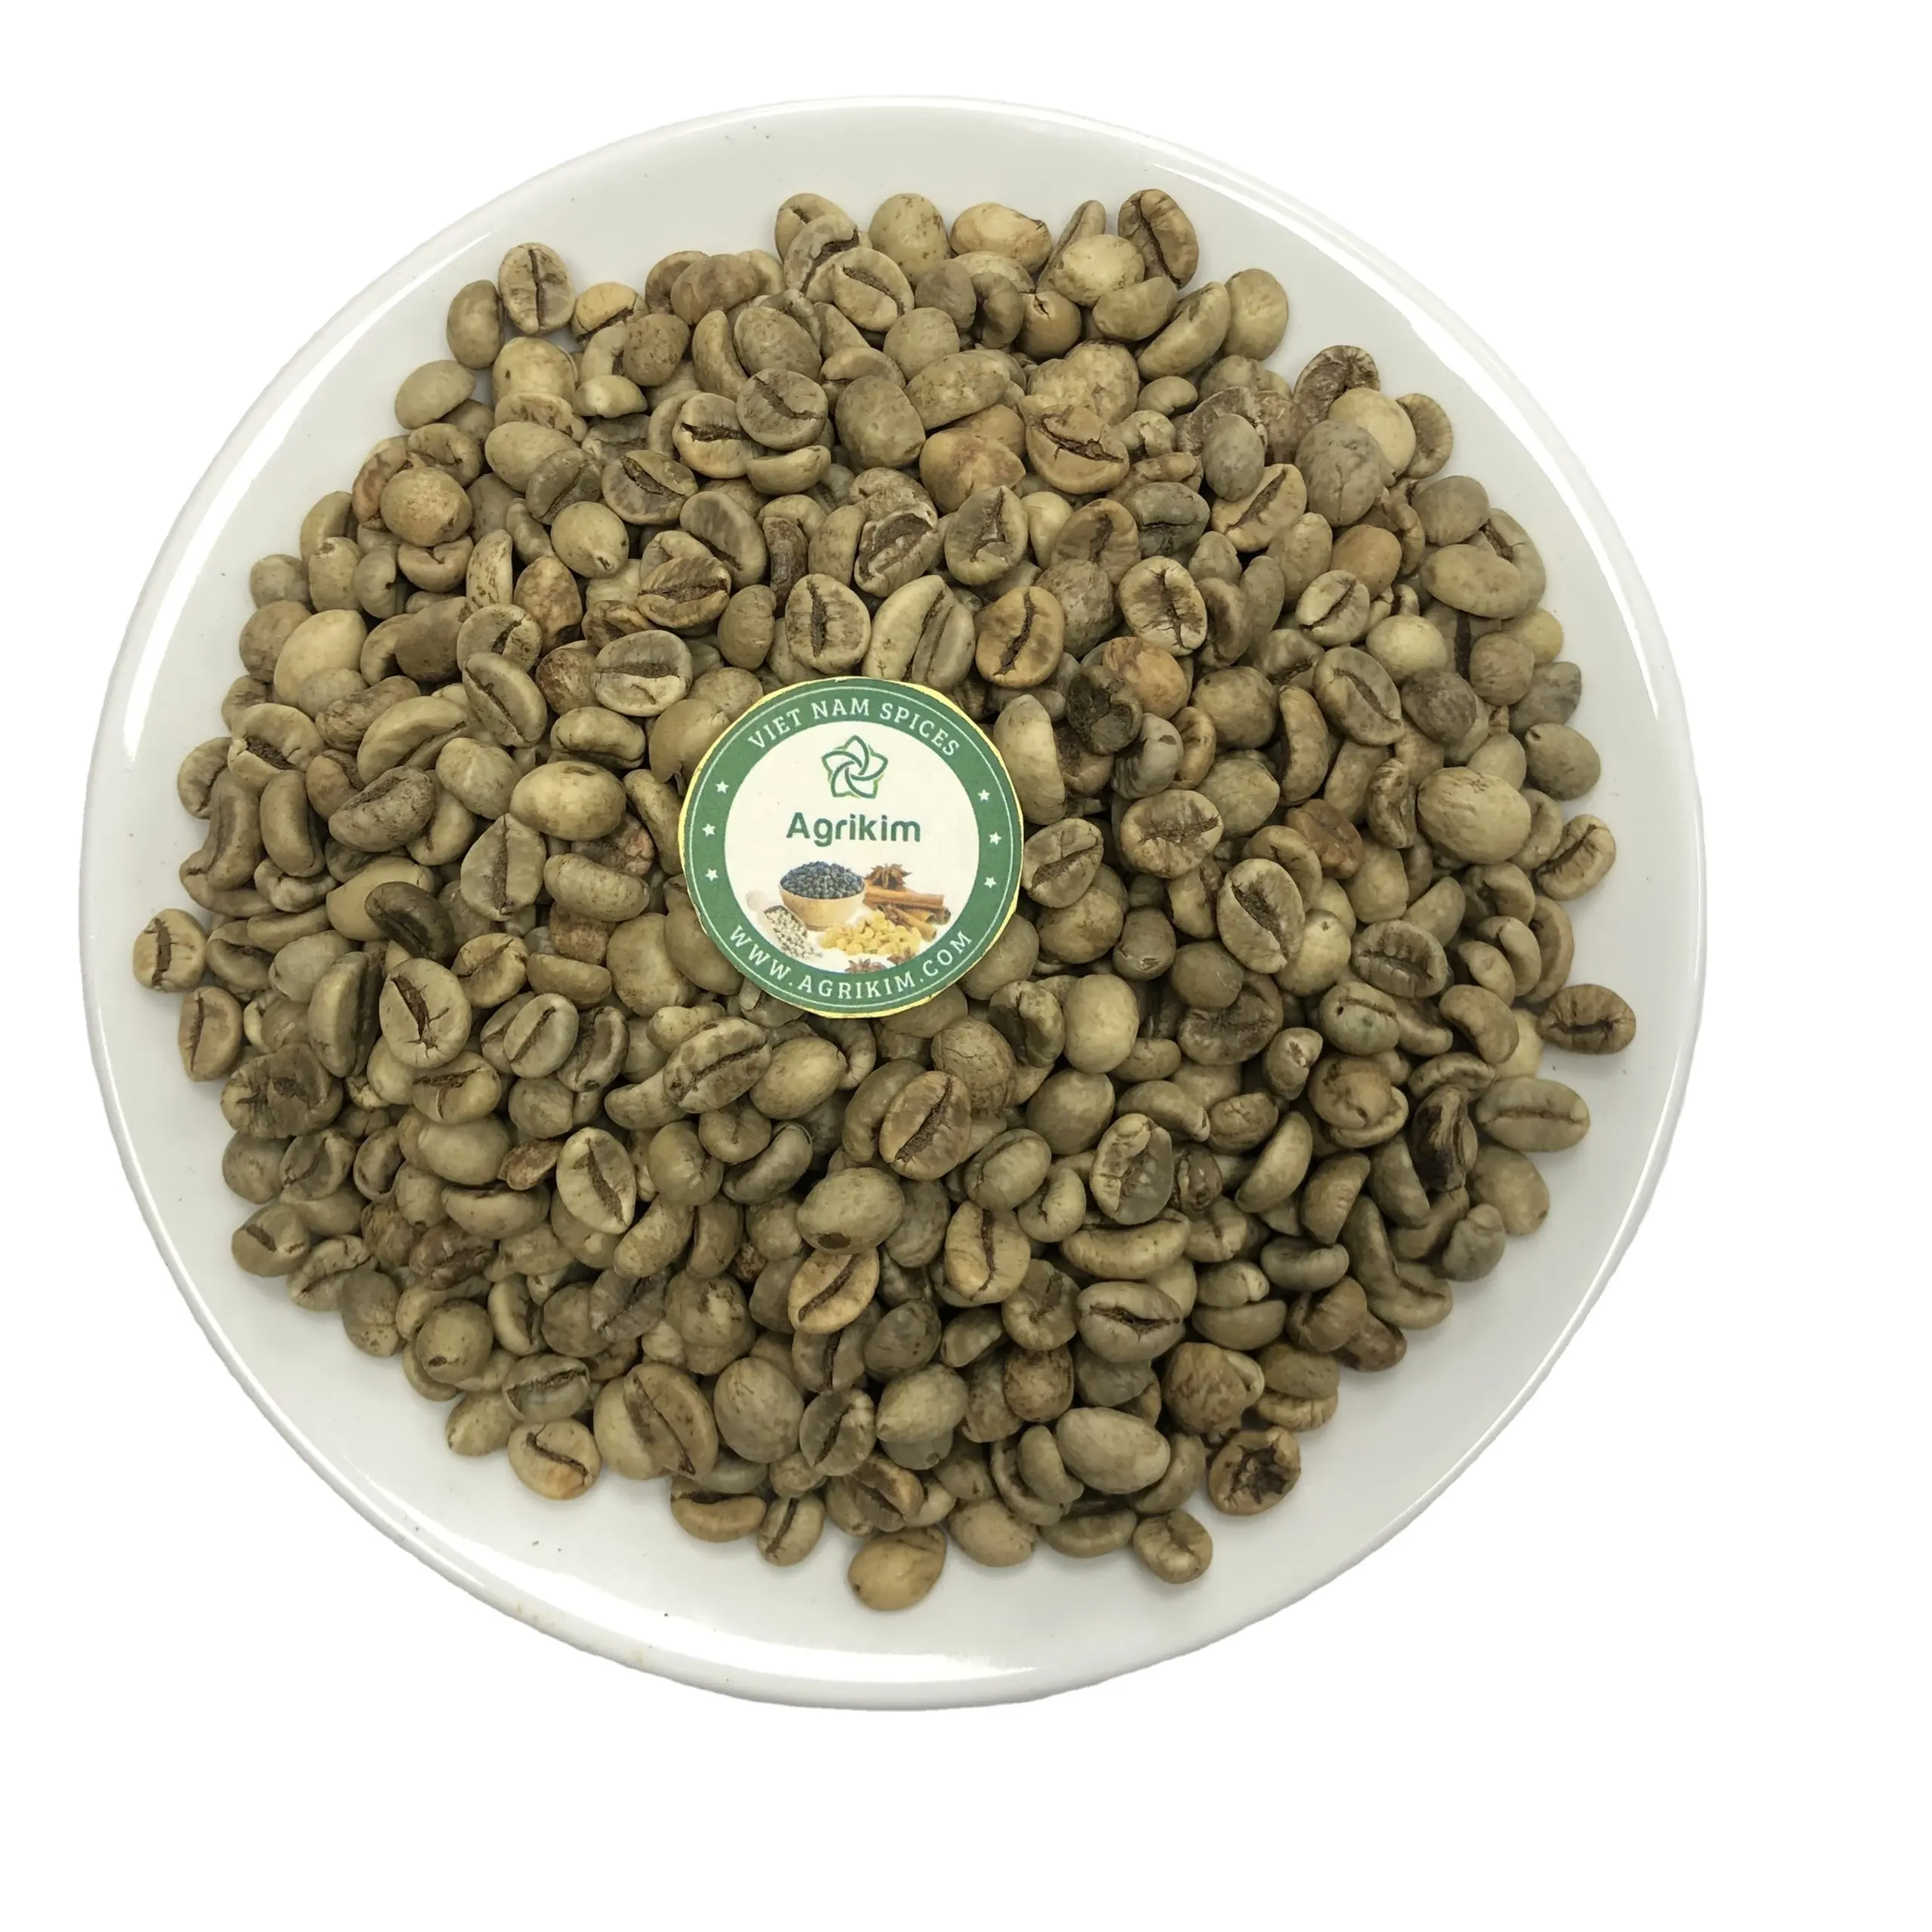 Grains de café vert ARABICA, toutes les qualités, VIETNAM, haute qualité, prix le moins cher whatsapp + 84 326055616